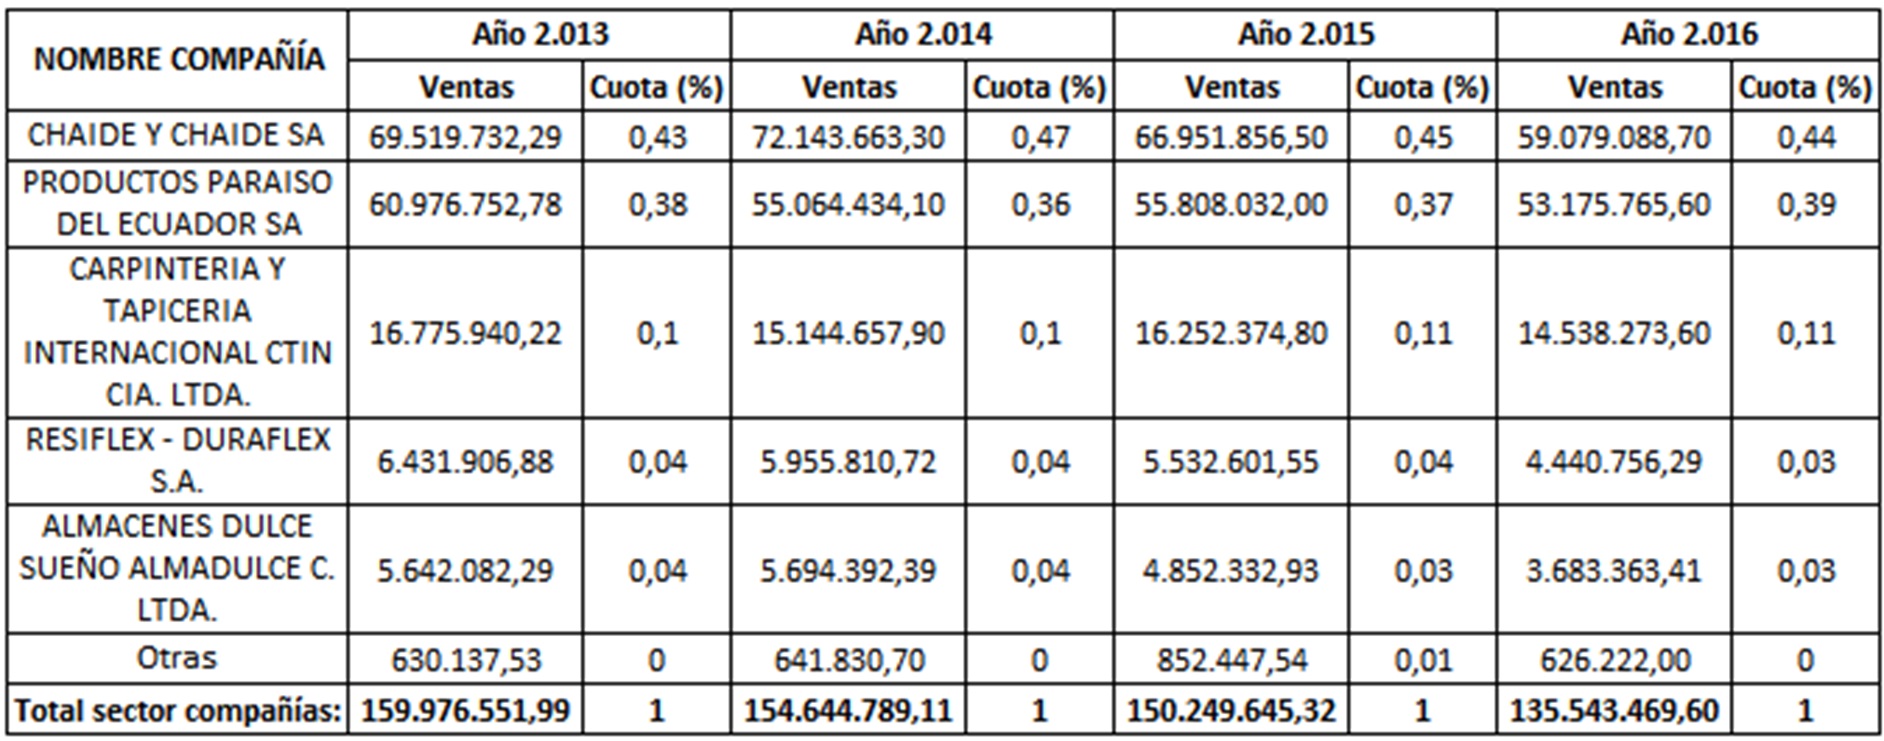 Ventas y cuota de mercado de las
empresas dedicadas a la fabricación de colchones en Ecuador. Período 2013-2016